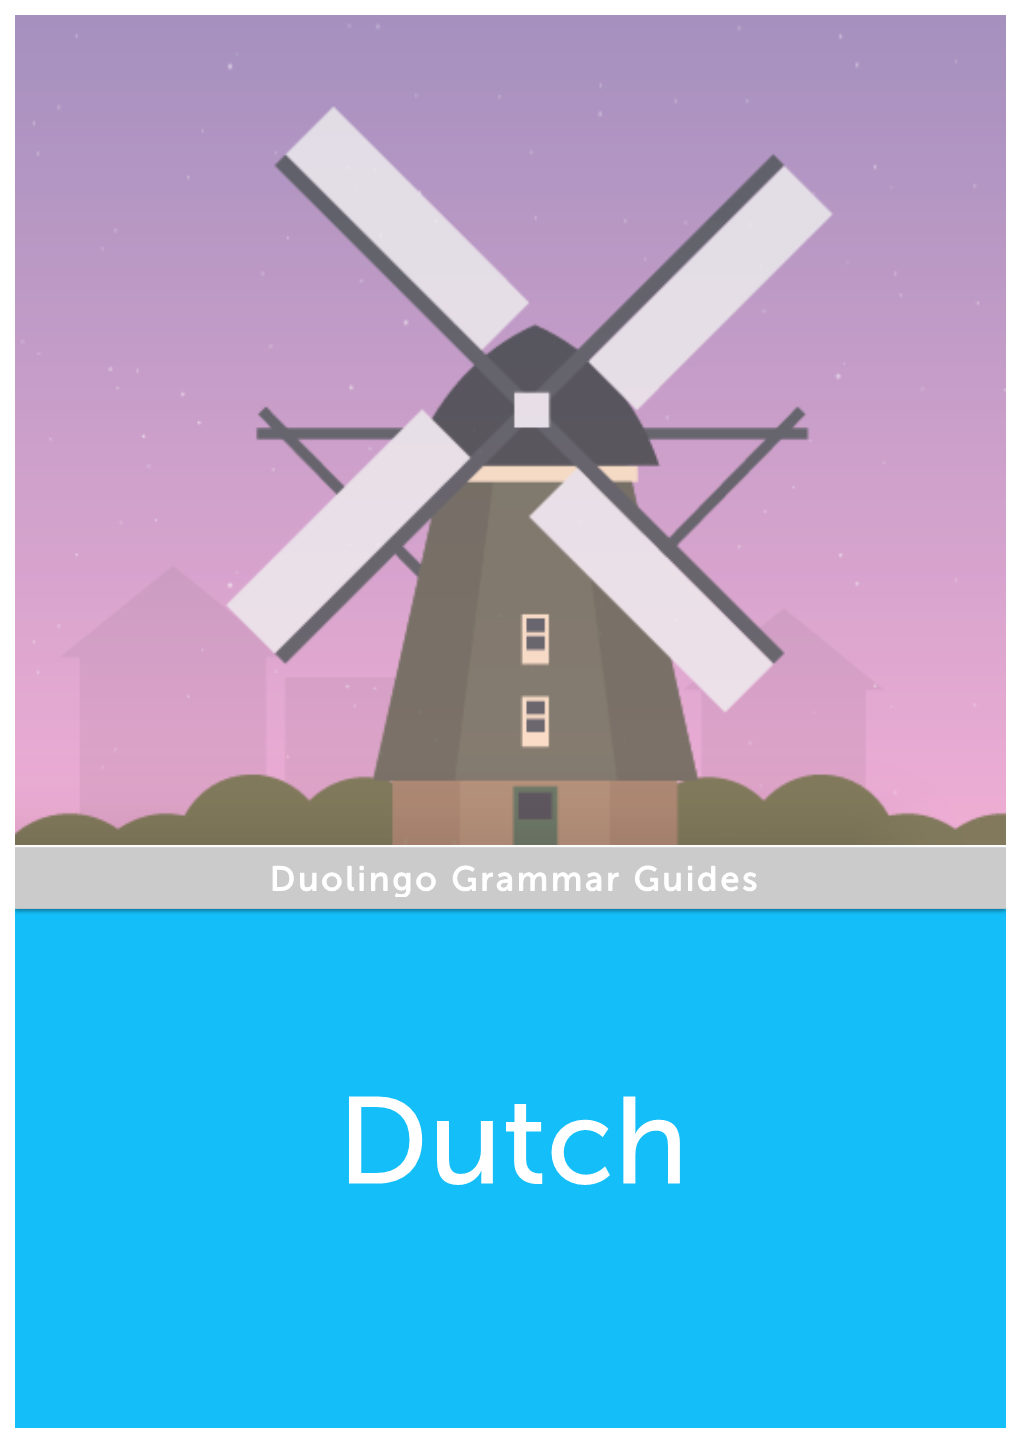 Duolingo Grammar Guides